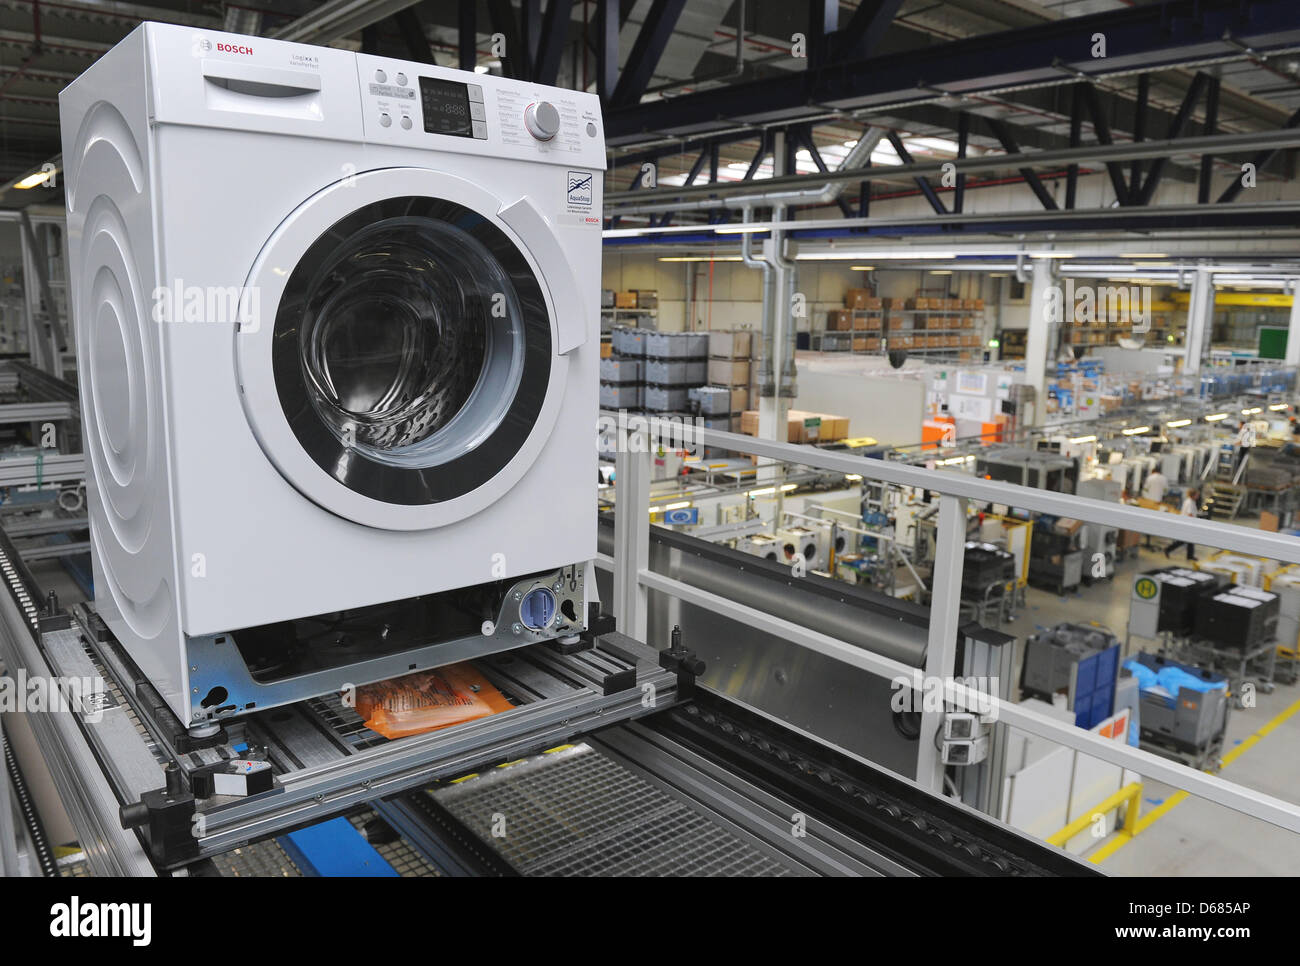 Eine Waschmaschine ist auf einem Fließband bei Bosch Siemens Hausgeraete GmbH in Nauen, Deutschland, 4. Juli 2012 abgebildet. Etwa 600 Mitarbeiter produzieren rund 800.000 hochwertige Waschmaschinen jährlich, von denen zwei Drittel exportiert werden. BSH Bosch Siemens Hausgeraete GmbH ist einer der weltweit führenden Hersteller von Haushaltsgeräten und größten Unternehmen der Branche in Europa. PH Stockfoto